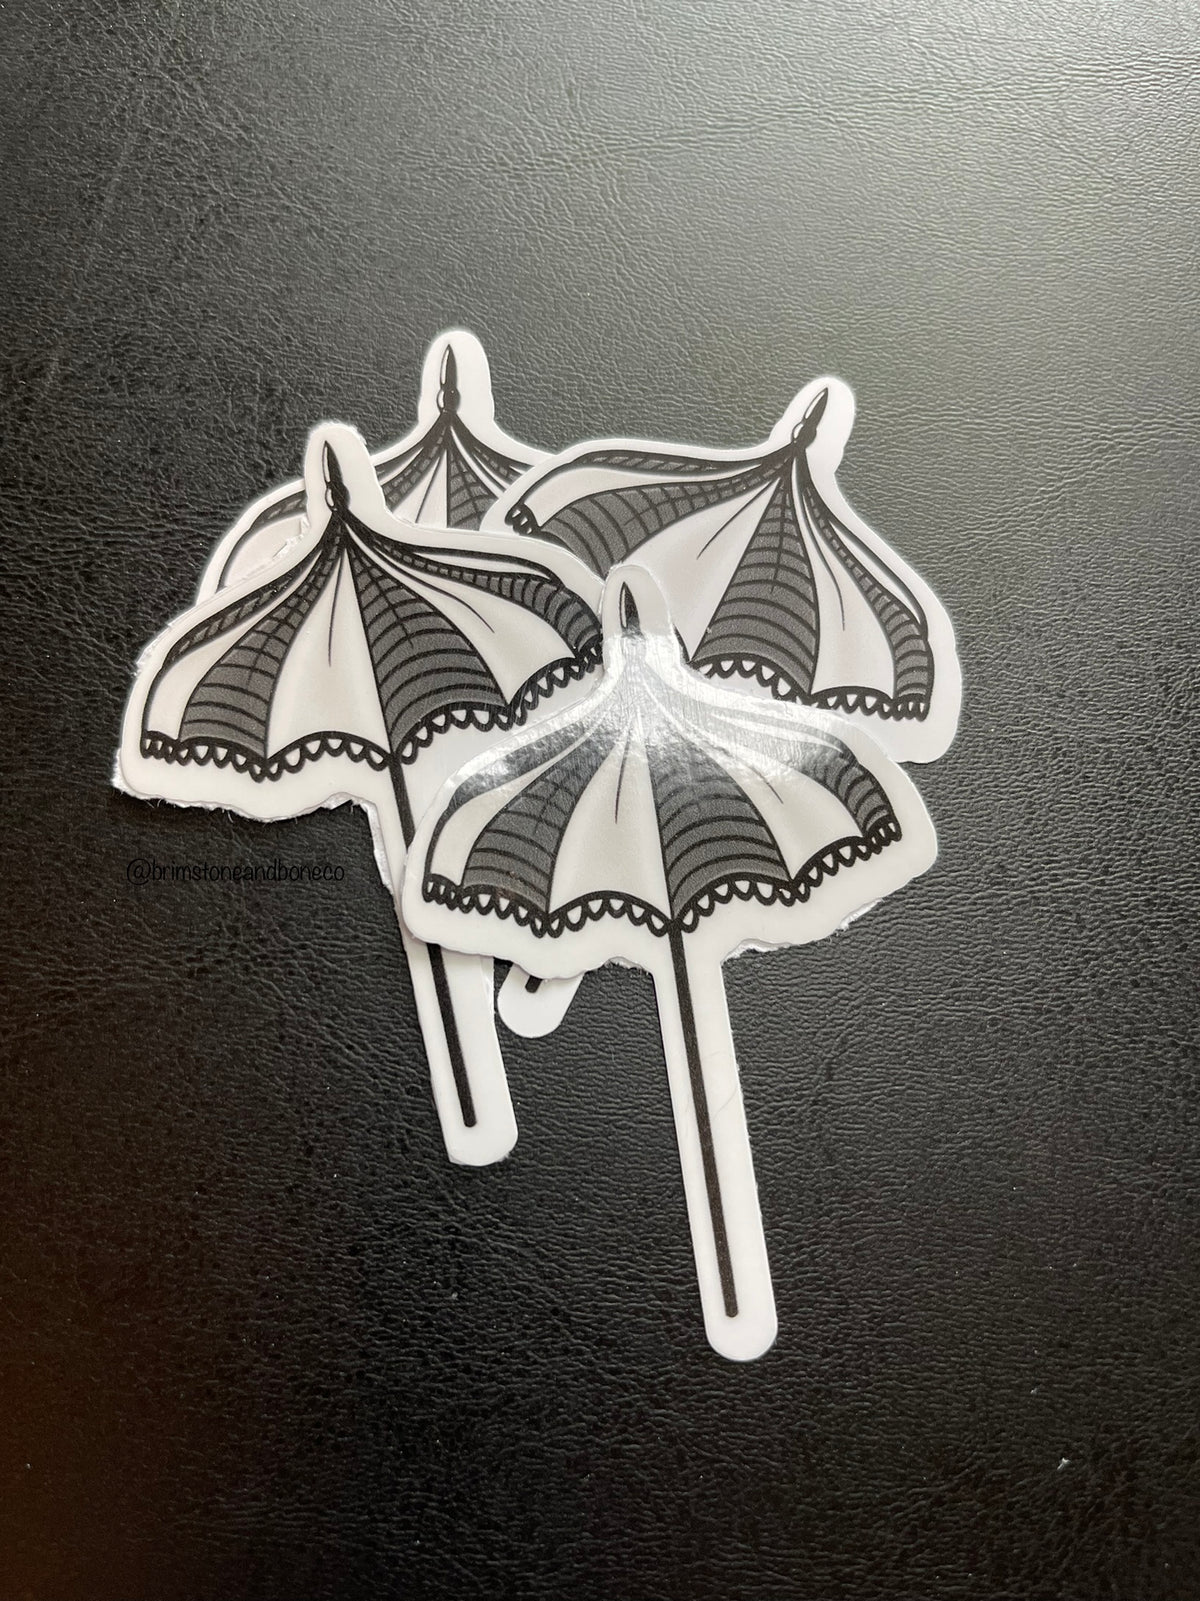 Goth Beach Umbrella Vinyl Sticker